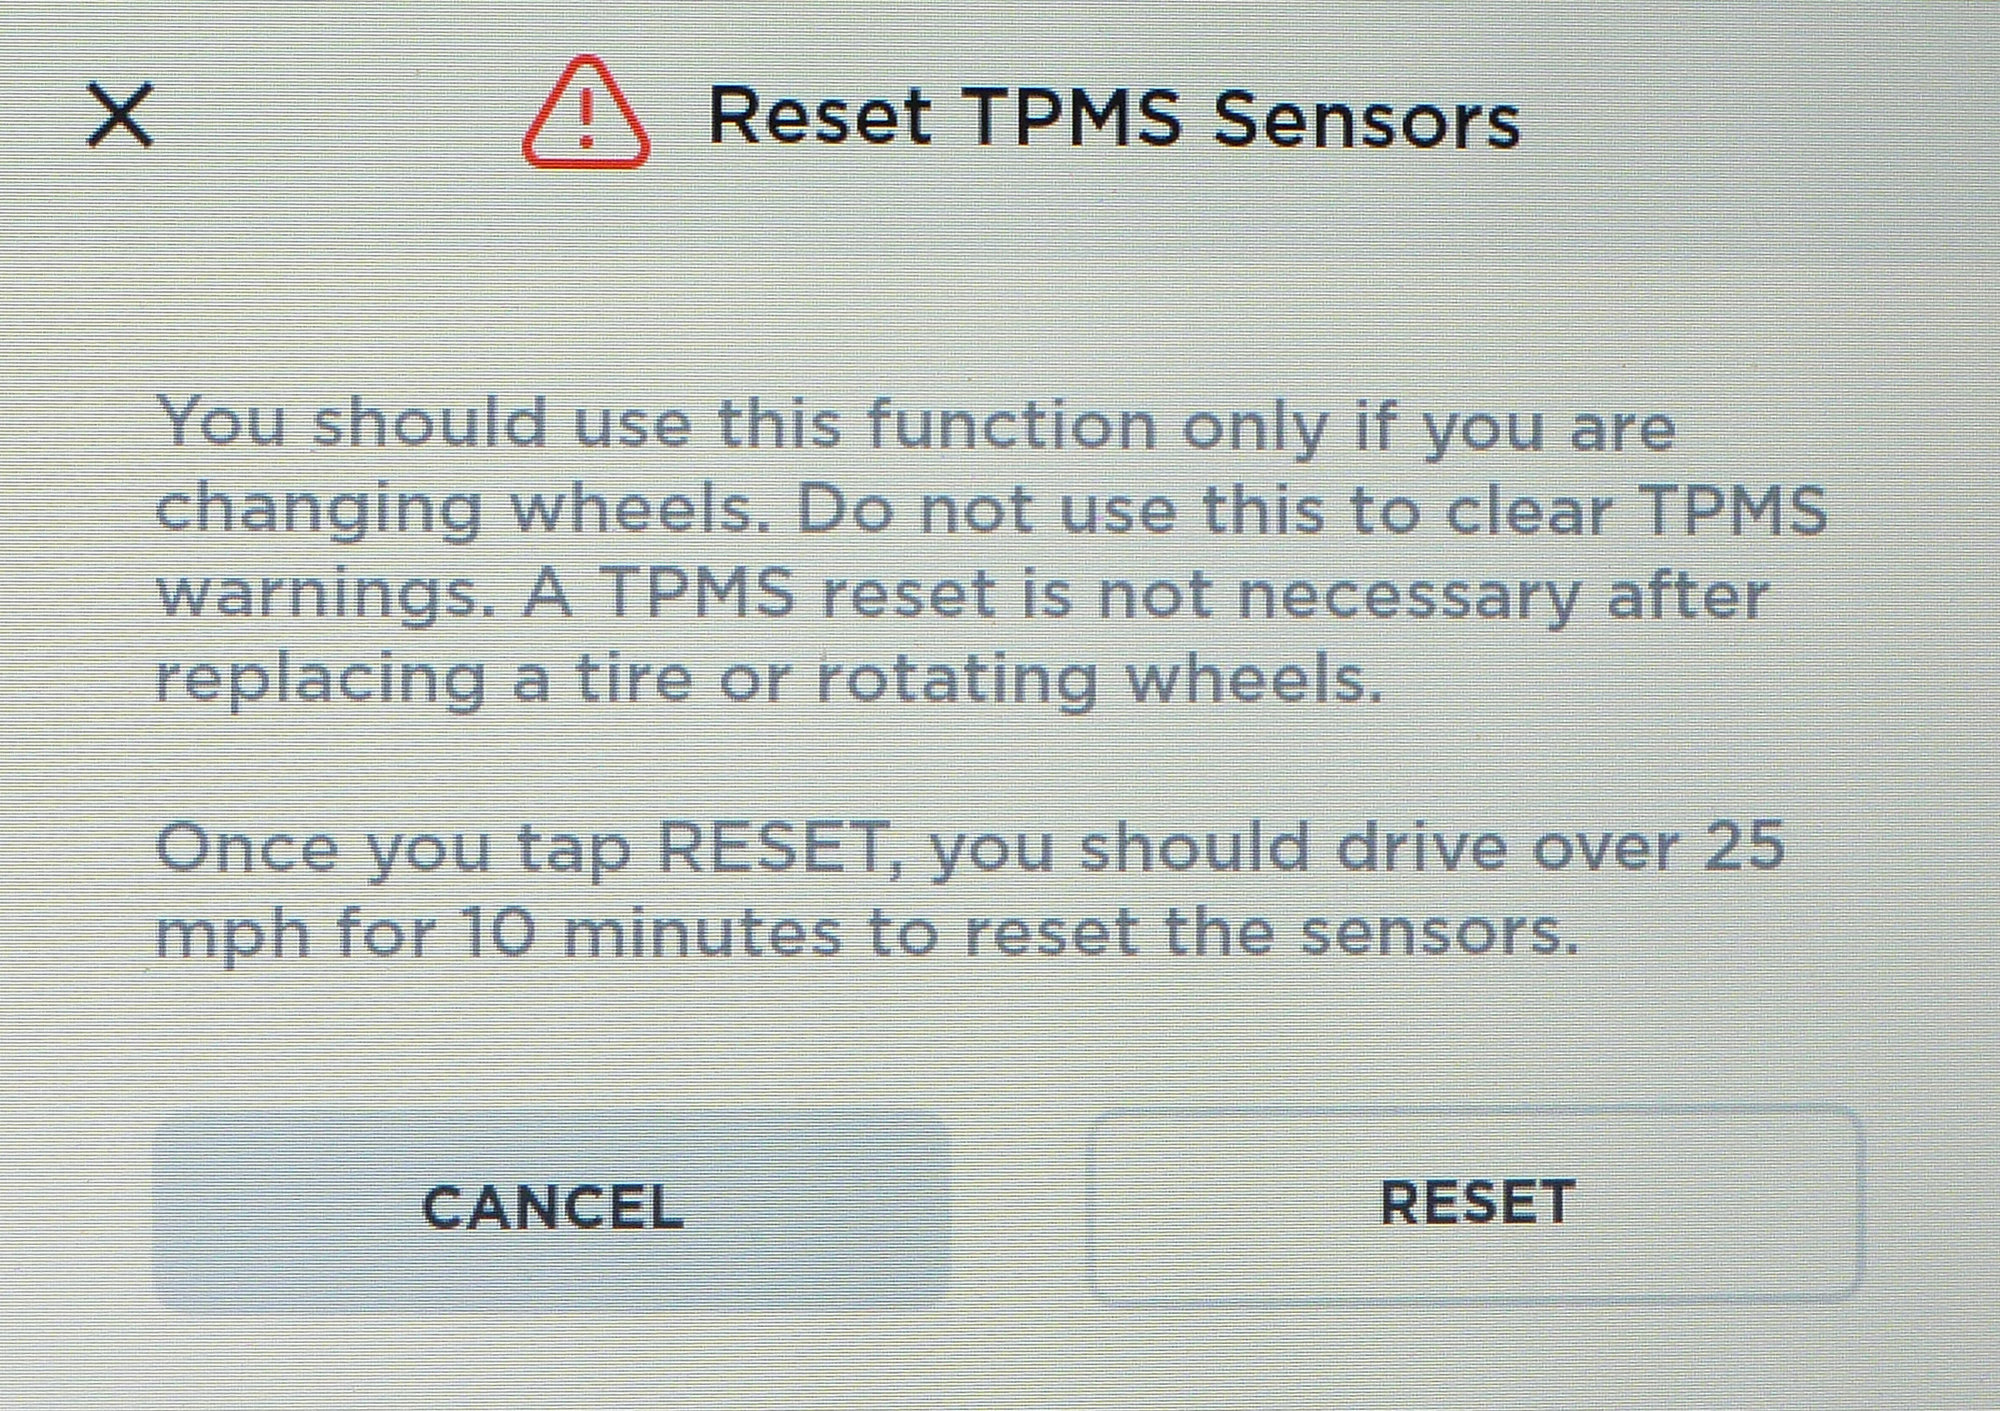 TPMS reset button 2332crop 2-6-20.jpg